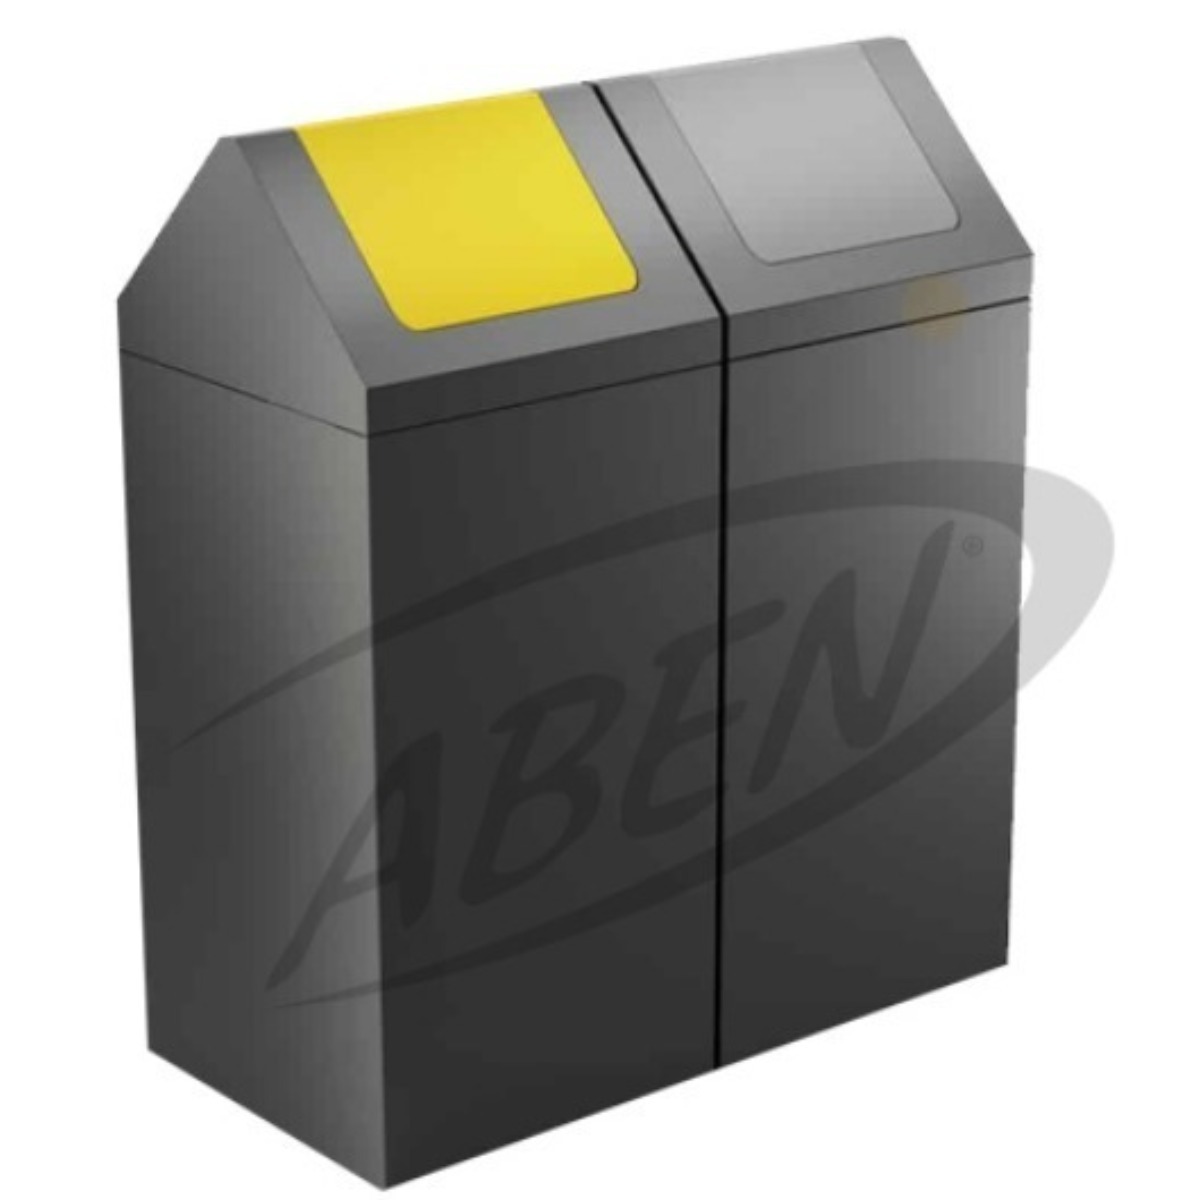 AB-773 2'Part Recycle Bin adlı ürünün logosu